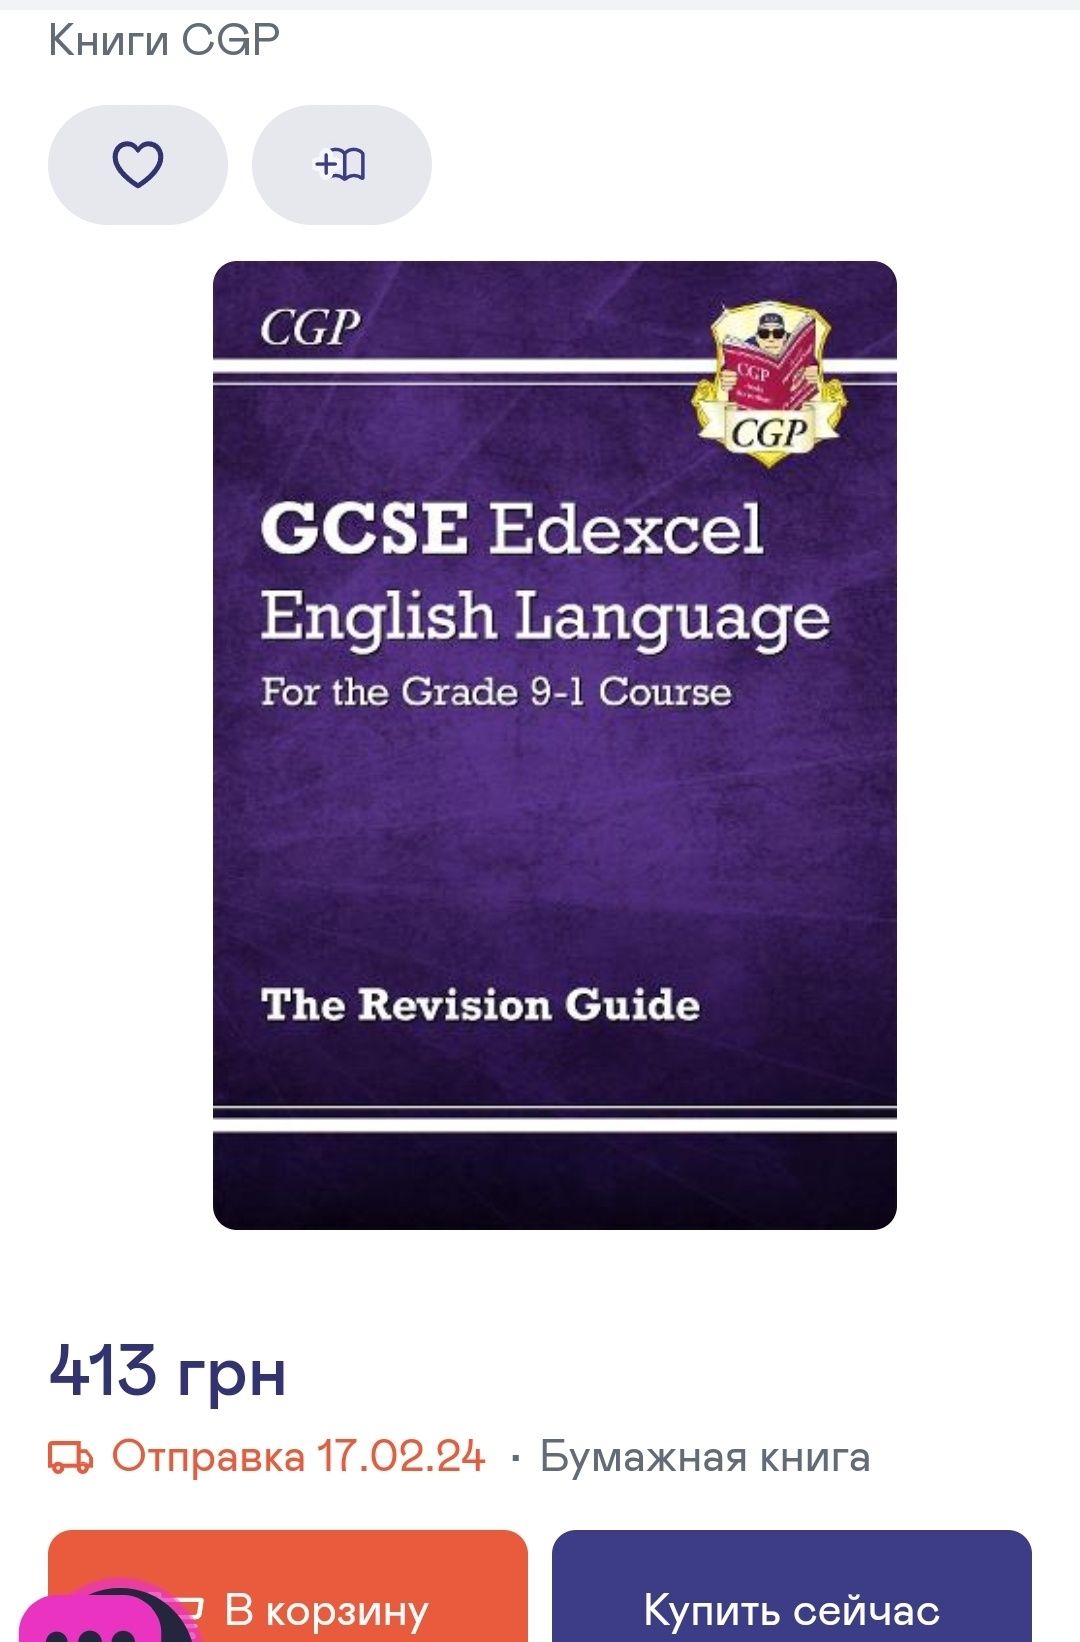 Підготовка до іспиту GCSE AQA. English Language, 9-1 Course. Посібник